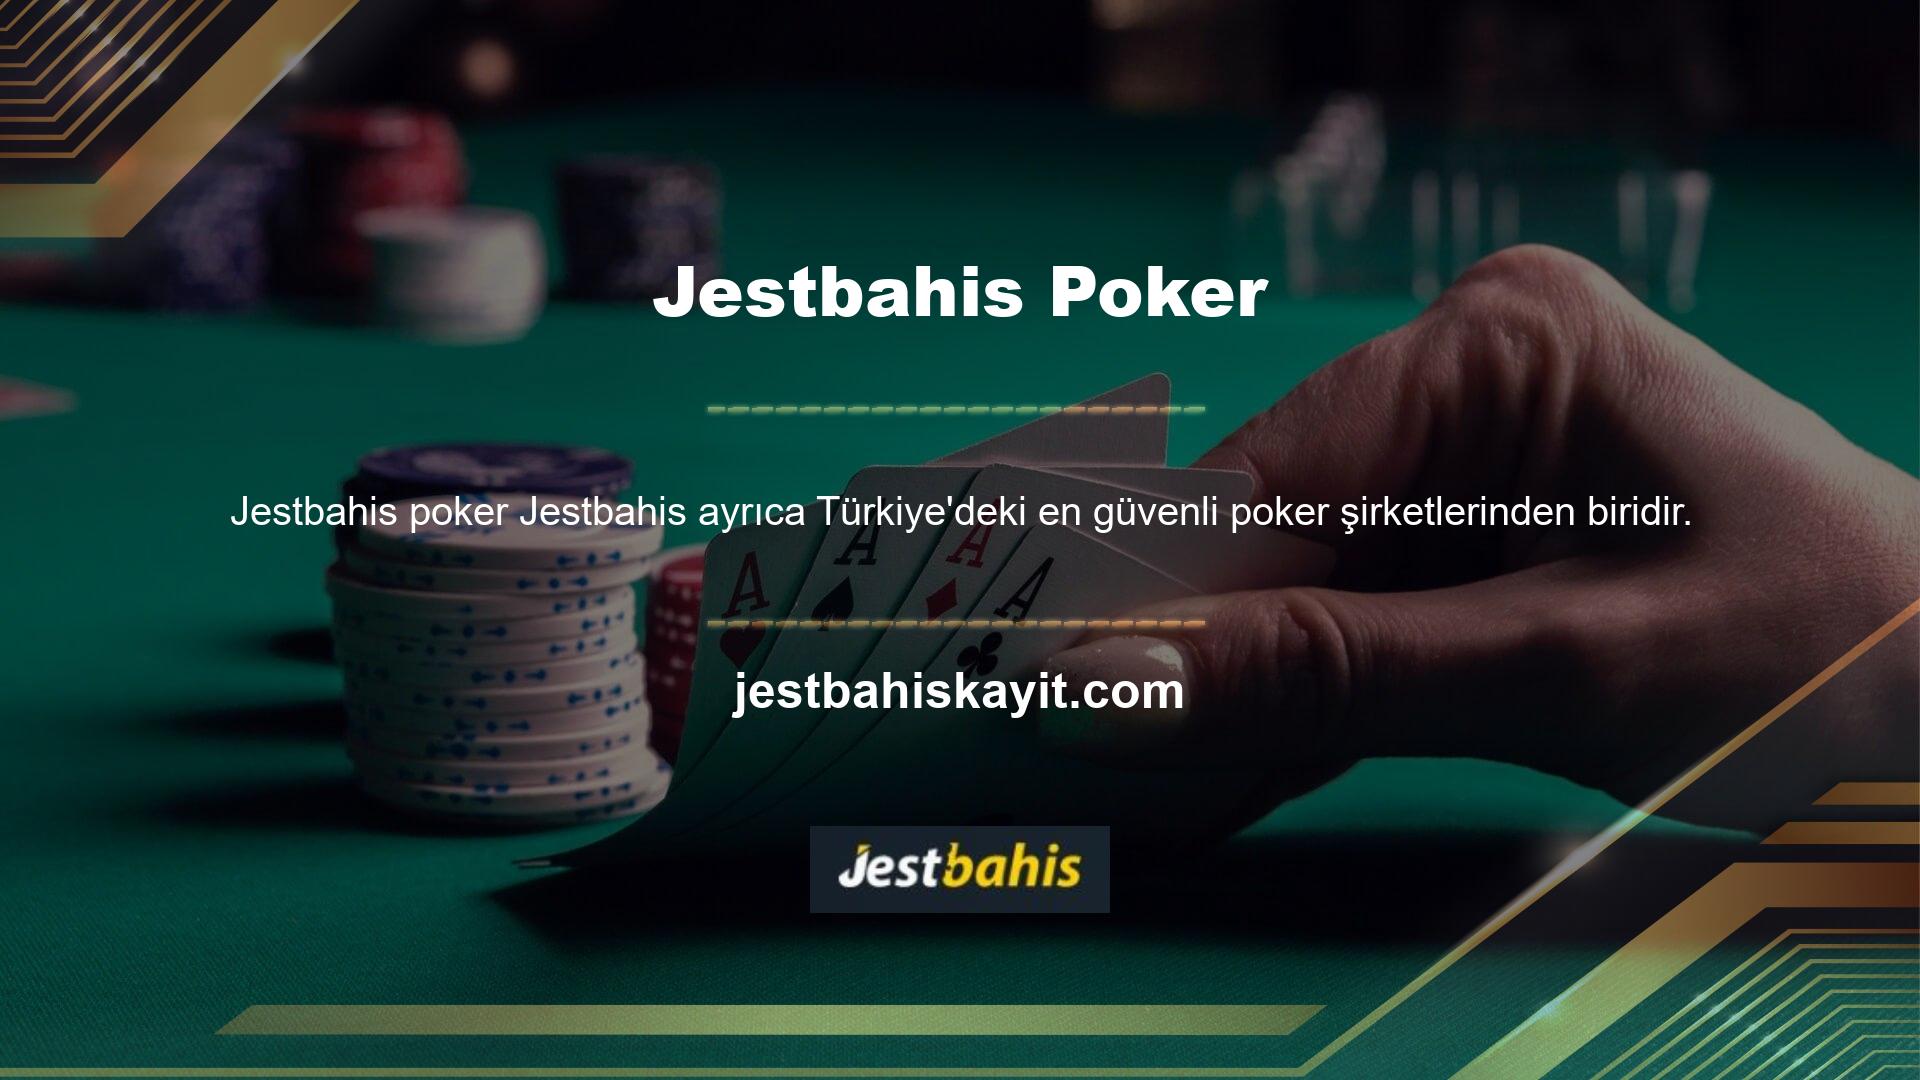 Bahis siteleri arasında Türk casino oyuncularının güvendiği ve her iki site tarafından da yüksek puan alan Jestbahis yer almaktadır